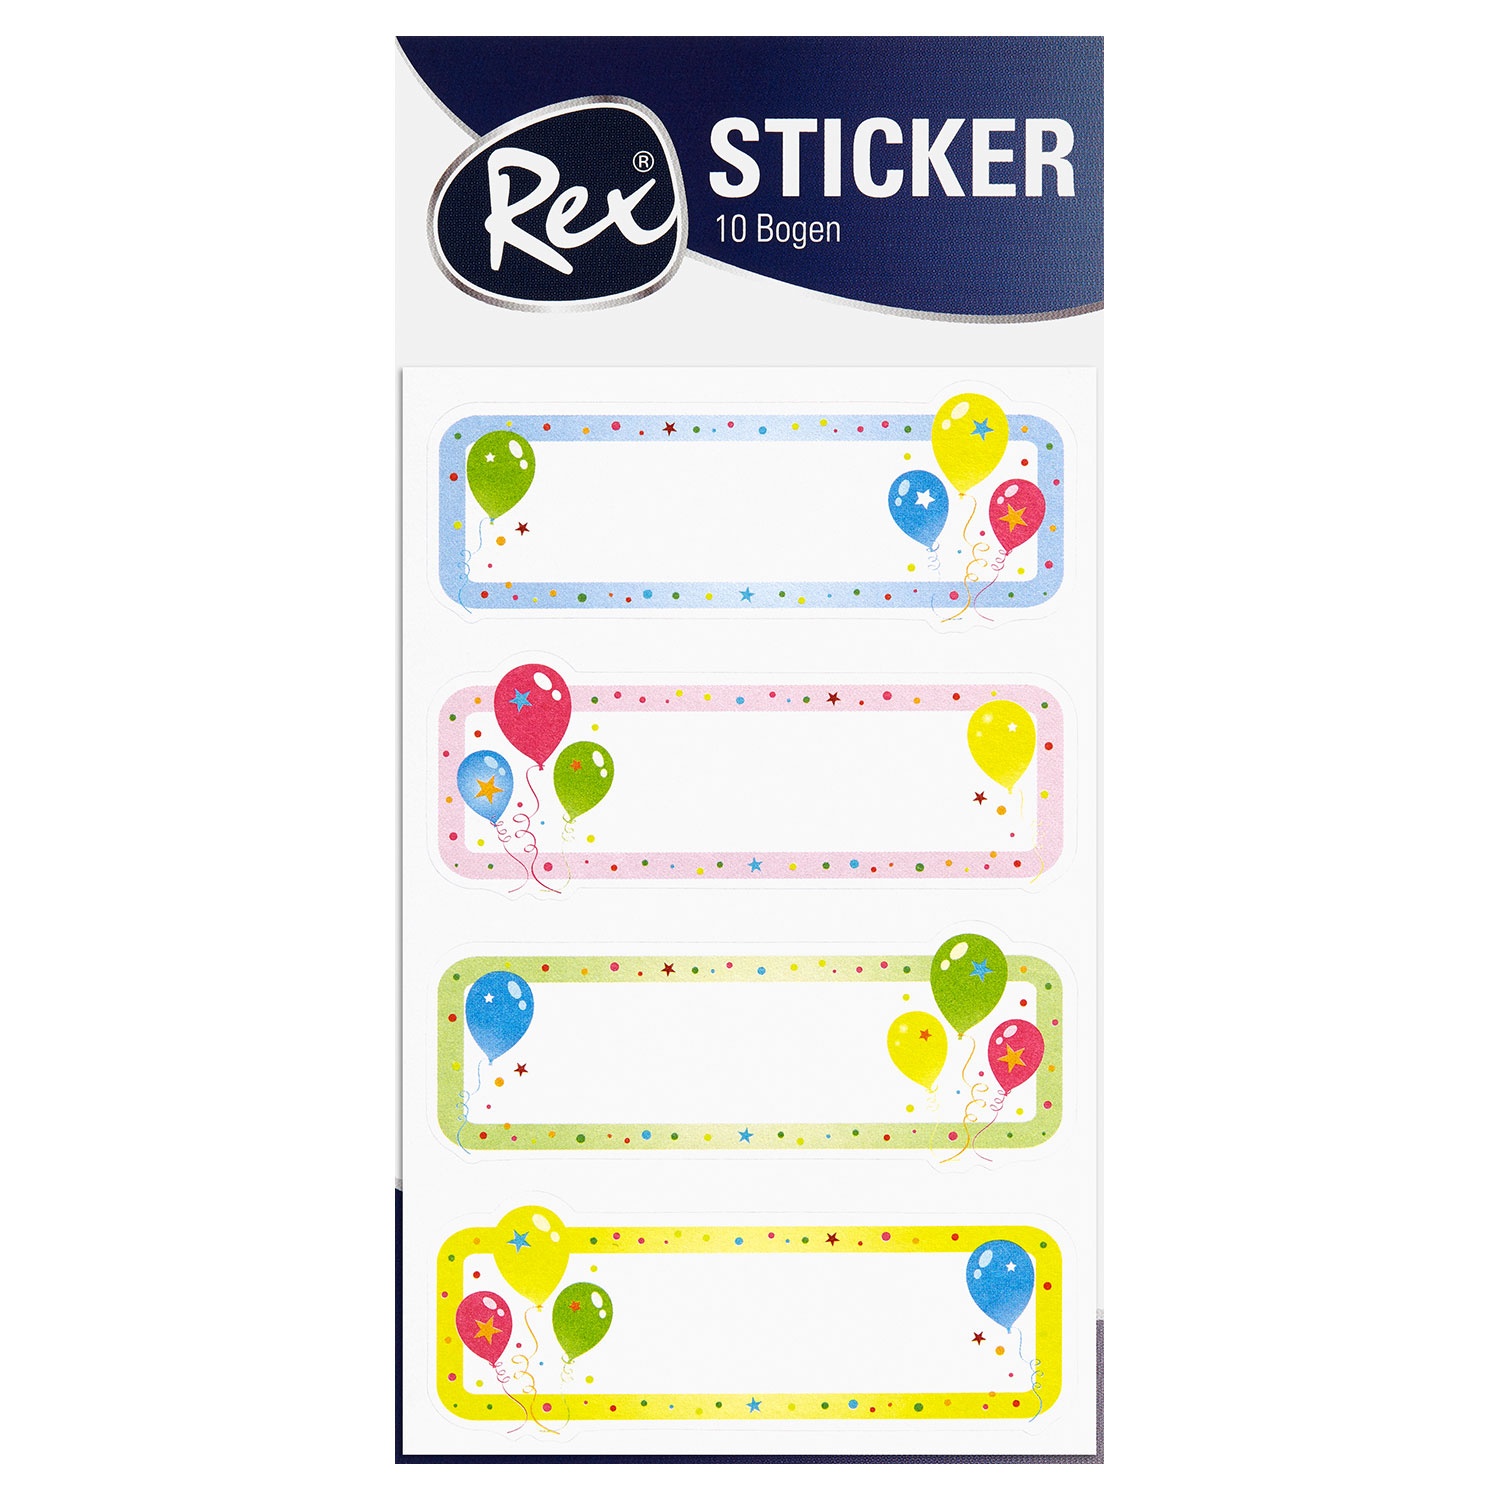 REX® Sticker, 10 Bögen